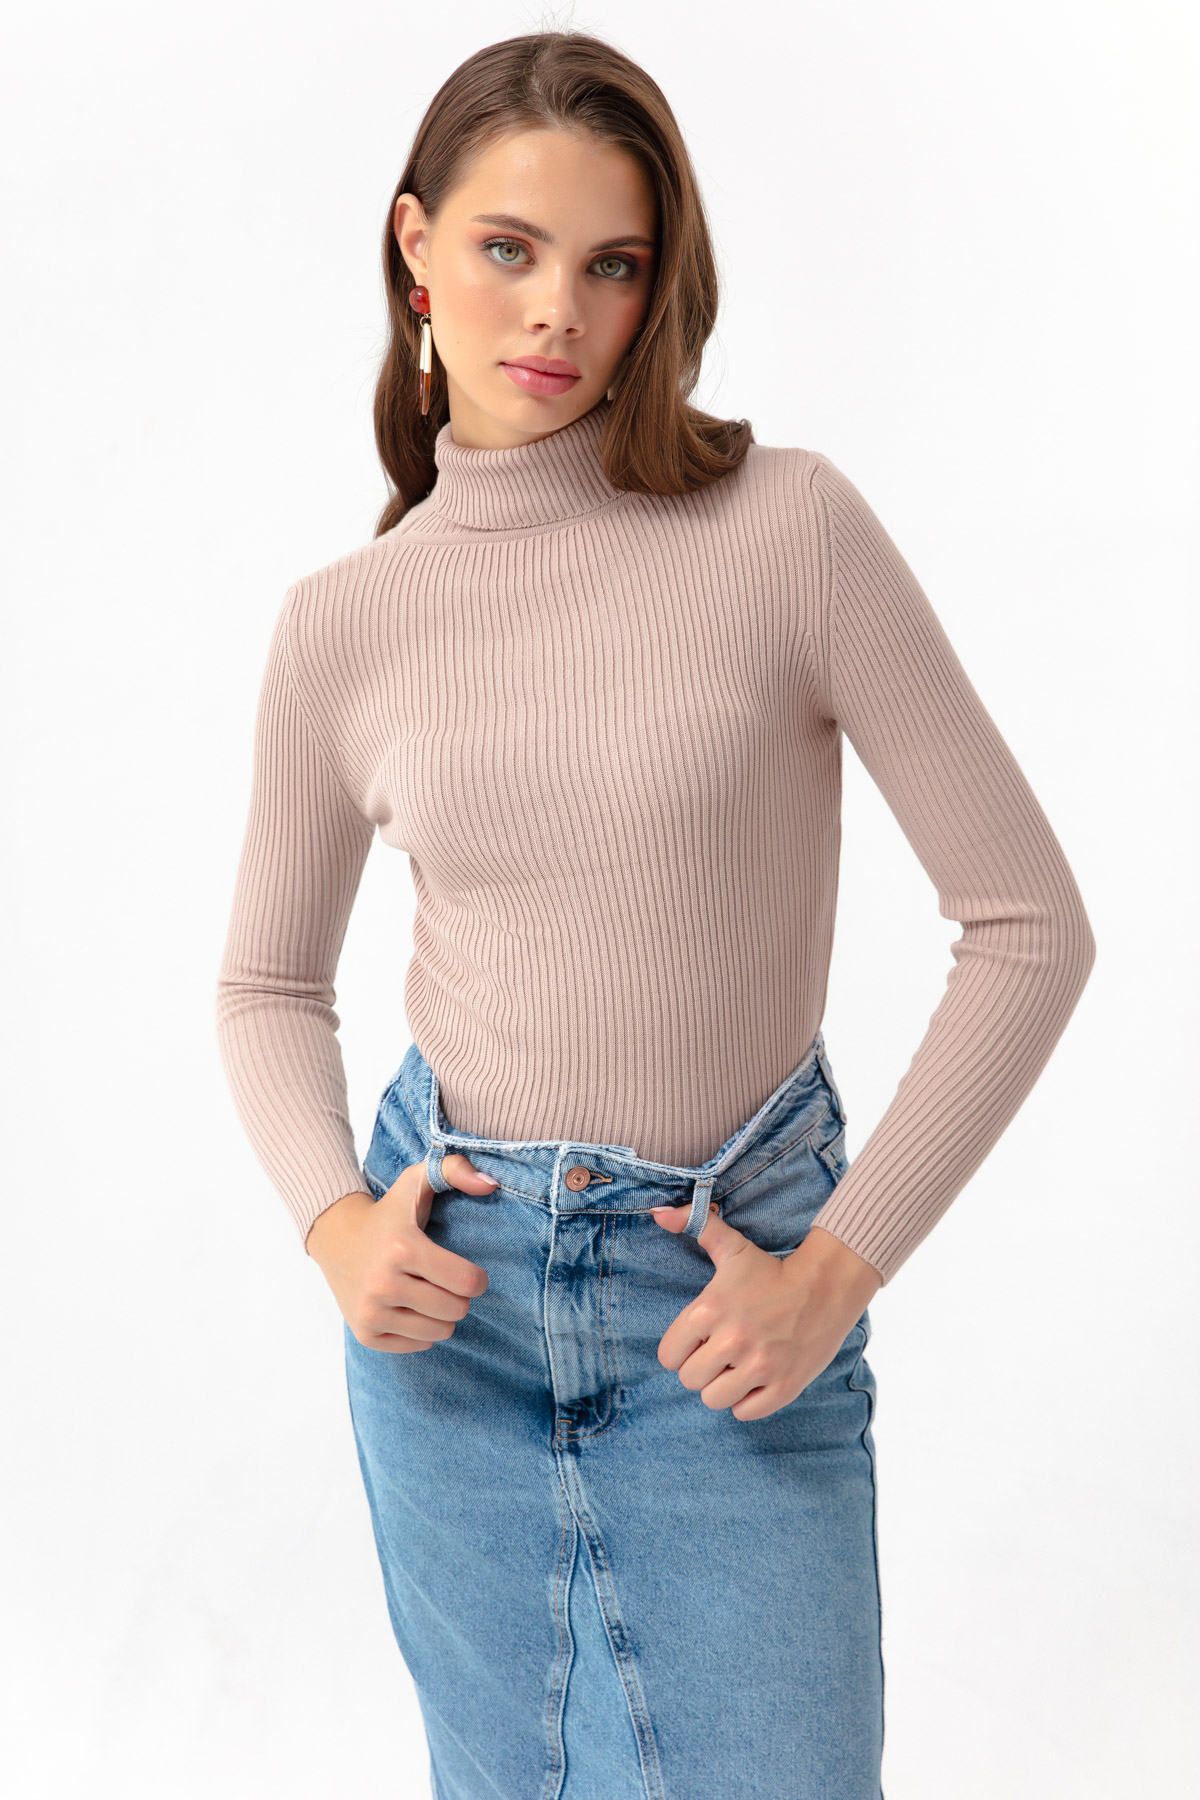 Women's Powder Turtleneck Knitwear Sweater